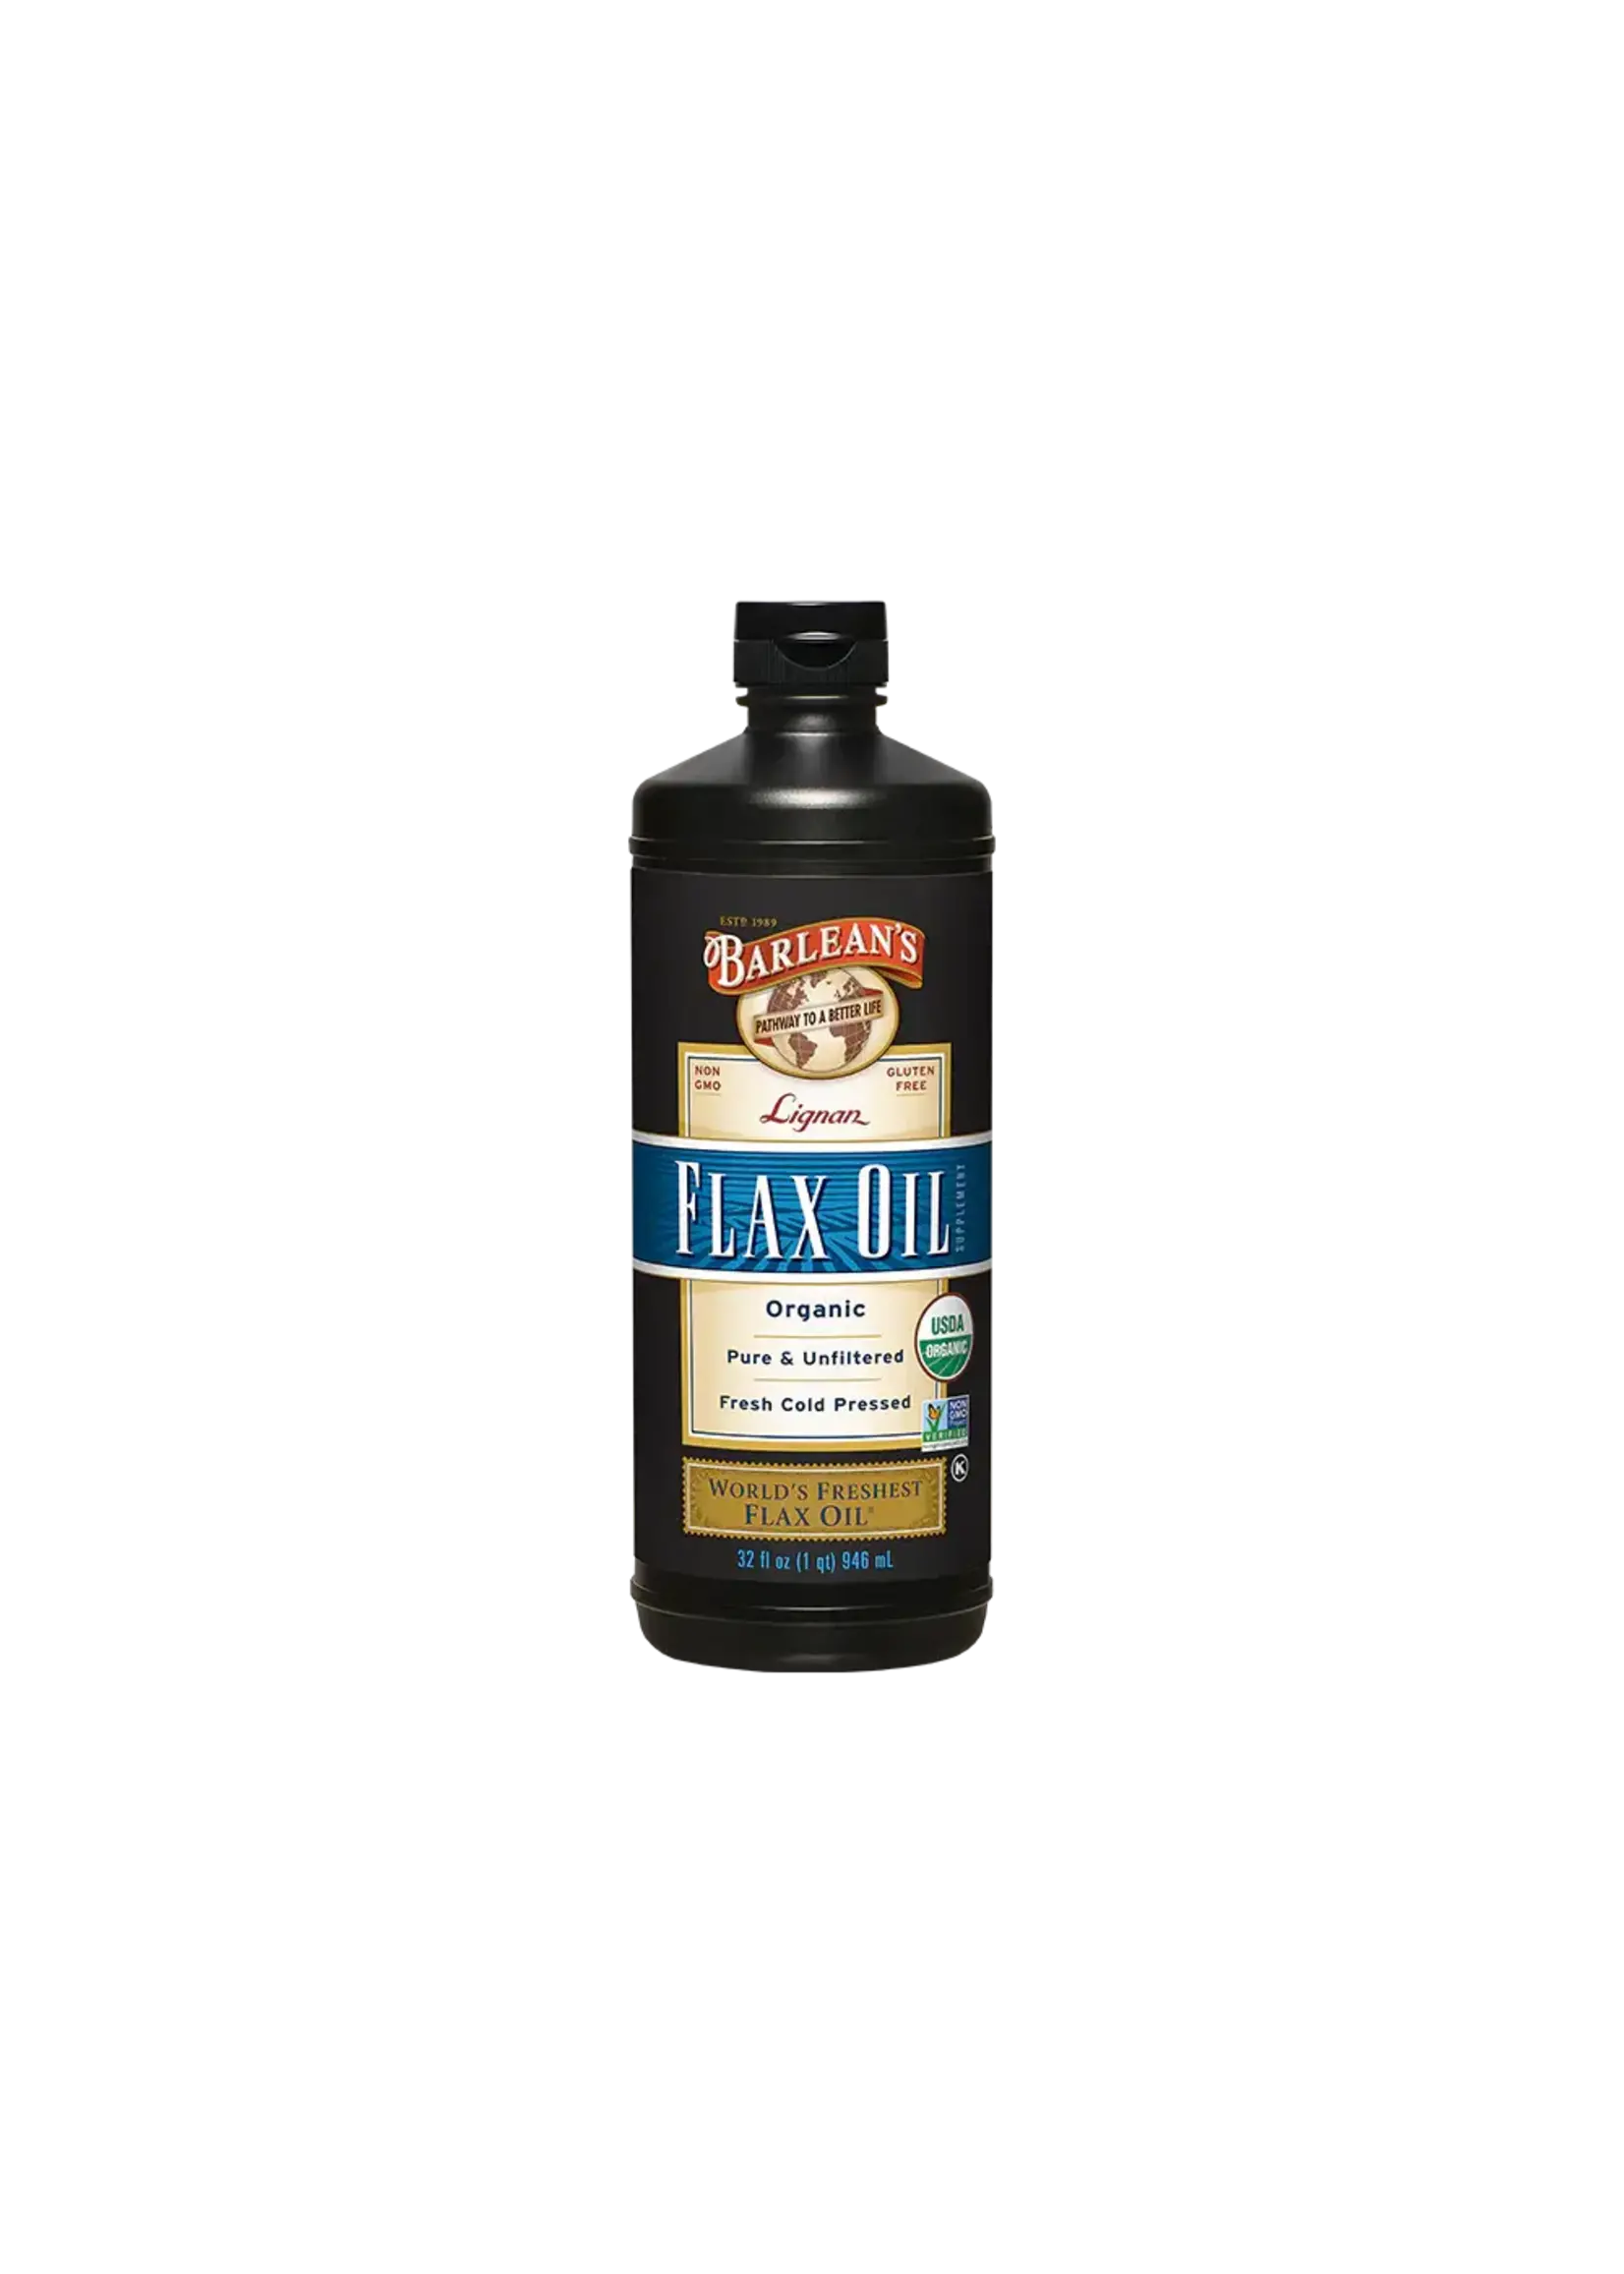 Lignan Flax Oil 32oz